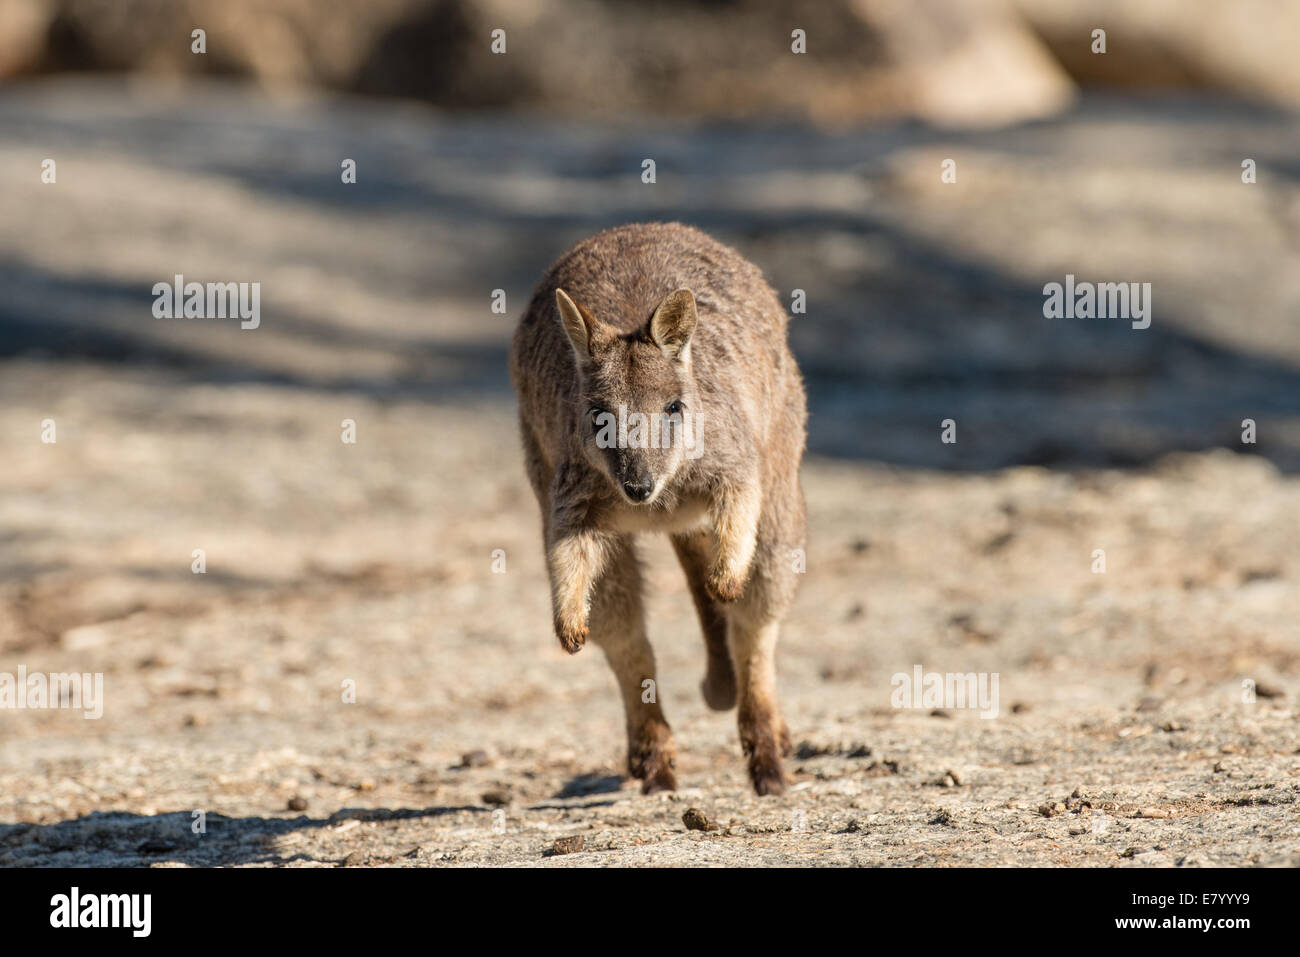 Stock photo of a Mareeba rock wallaby hopping. Stock Photo